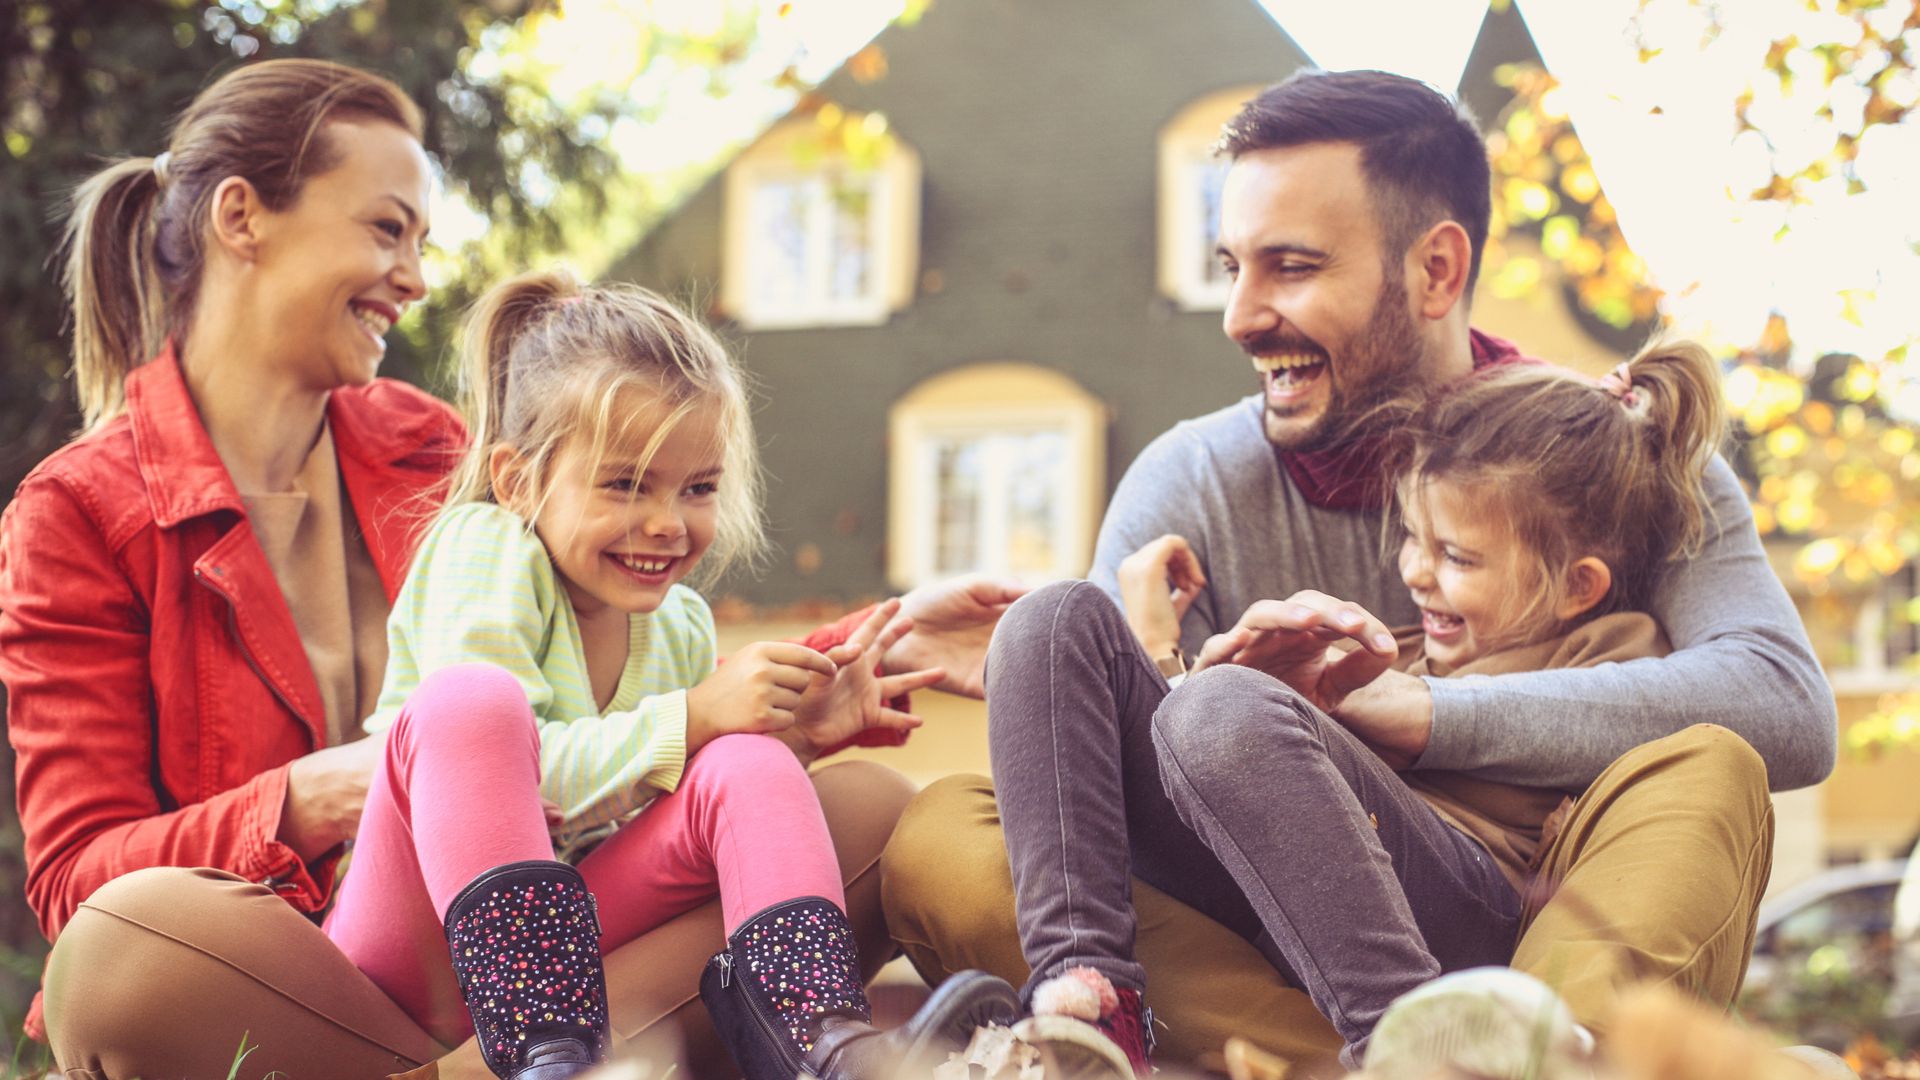 La seguridad familiar conforma una de las principales preocupaciones de las personas (Shutterstock)